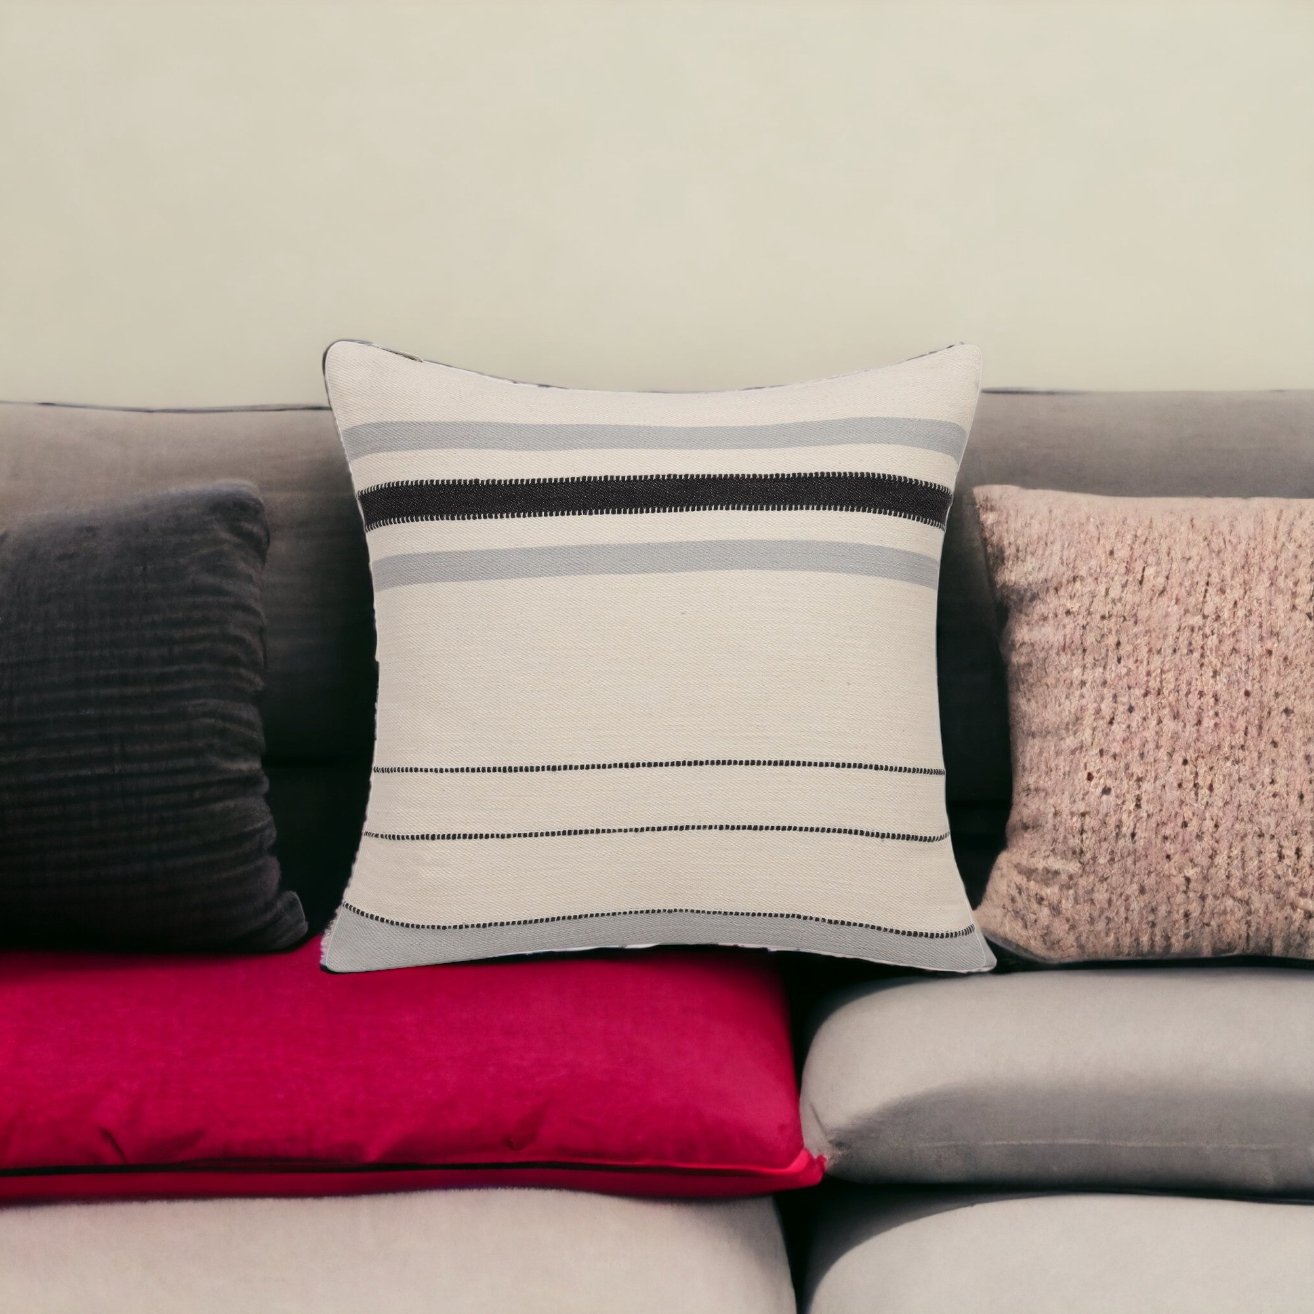 Striped Cotton Zippered Throw Pillow (20" X 20") - Revel Sofa 